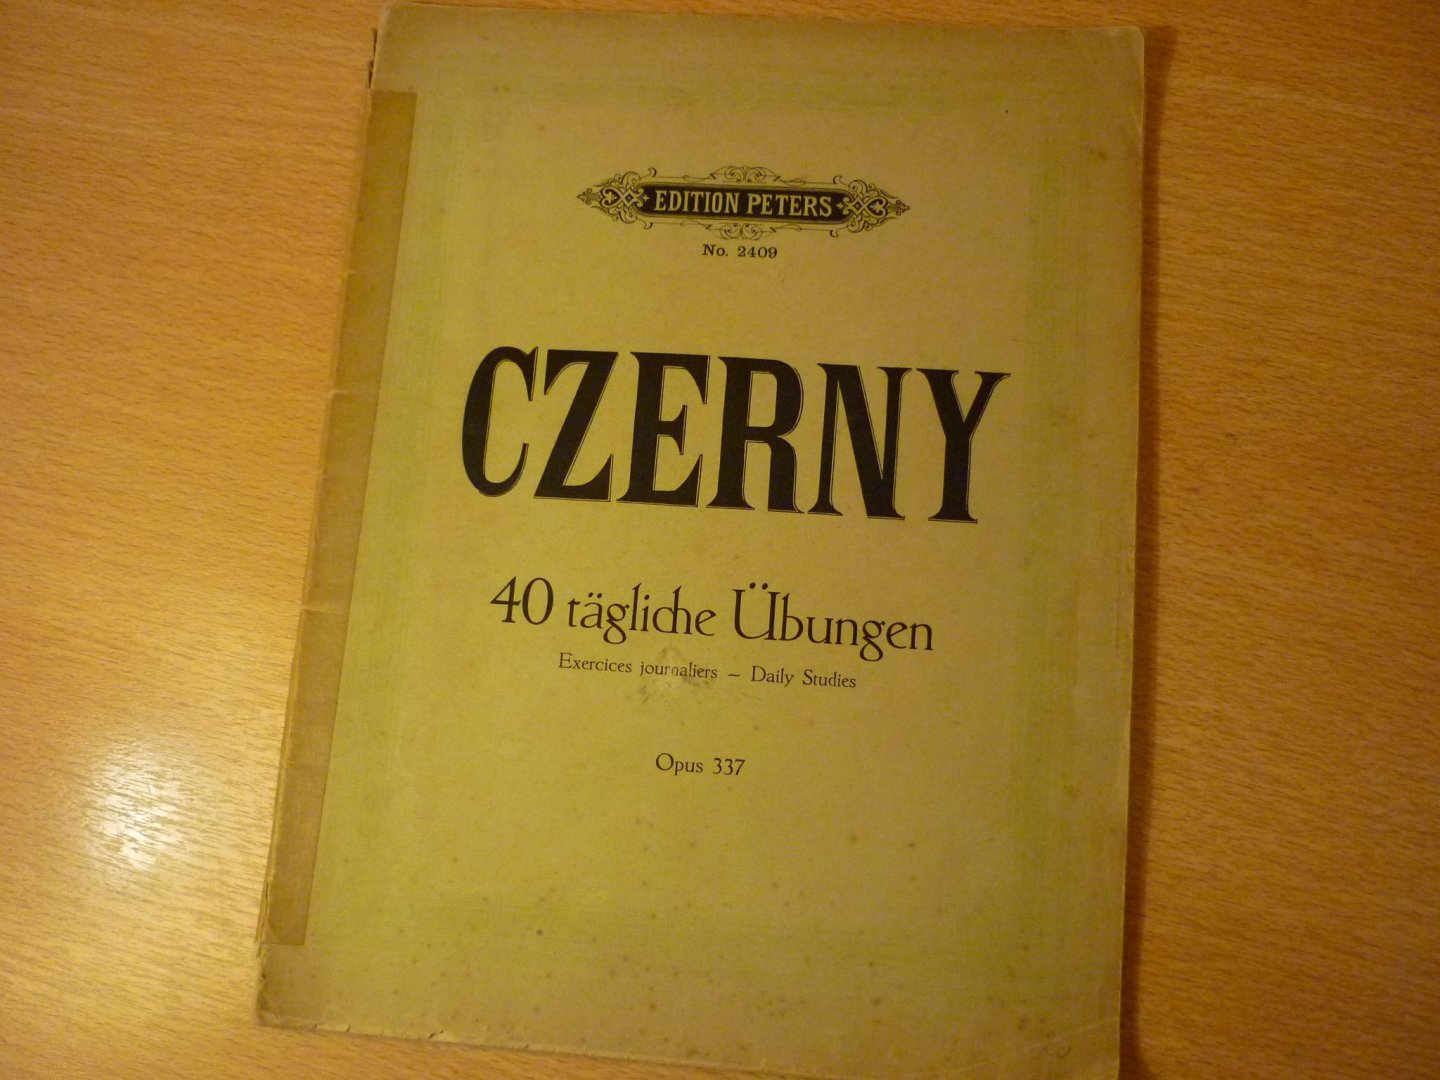 Czerny; Carl (1791 – 1857); revidiert von Adolf Ruthardt - 40 tagliche Ubungen - Opus 337